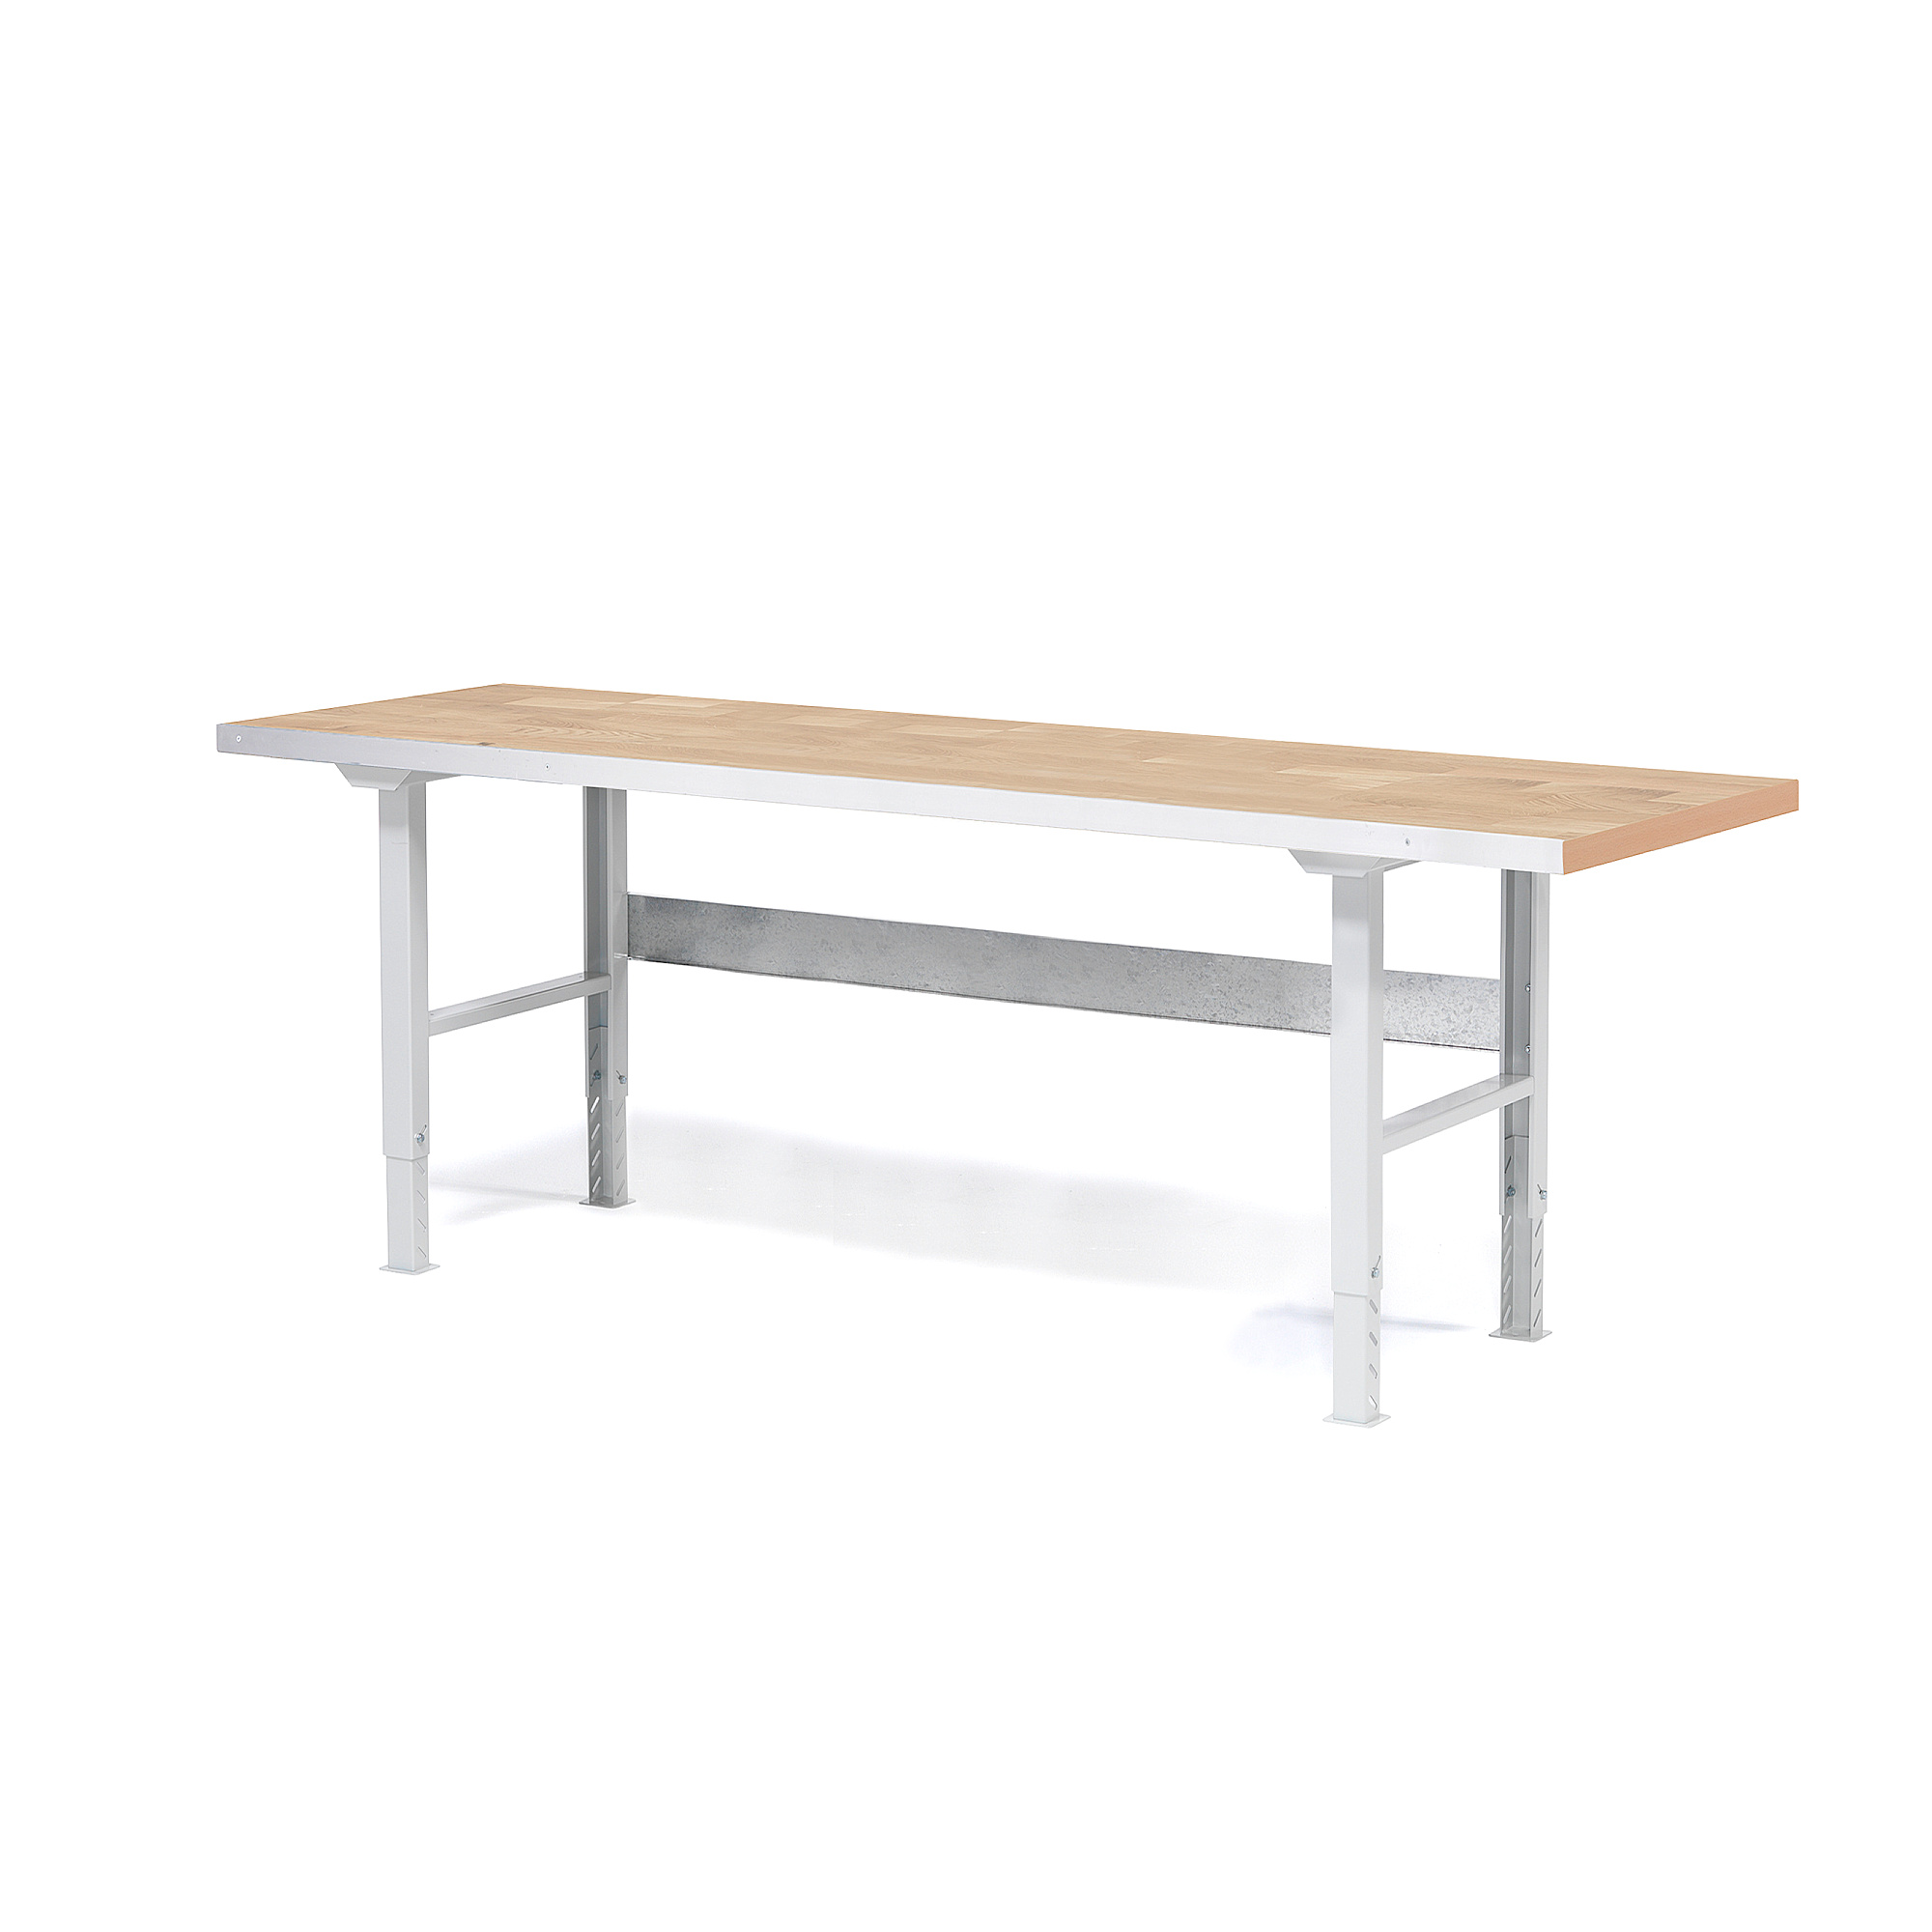 Dílenský stůl SOLID, 2500x800 mm, nosnost 750 kg, dubový povrch